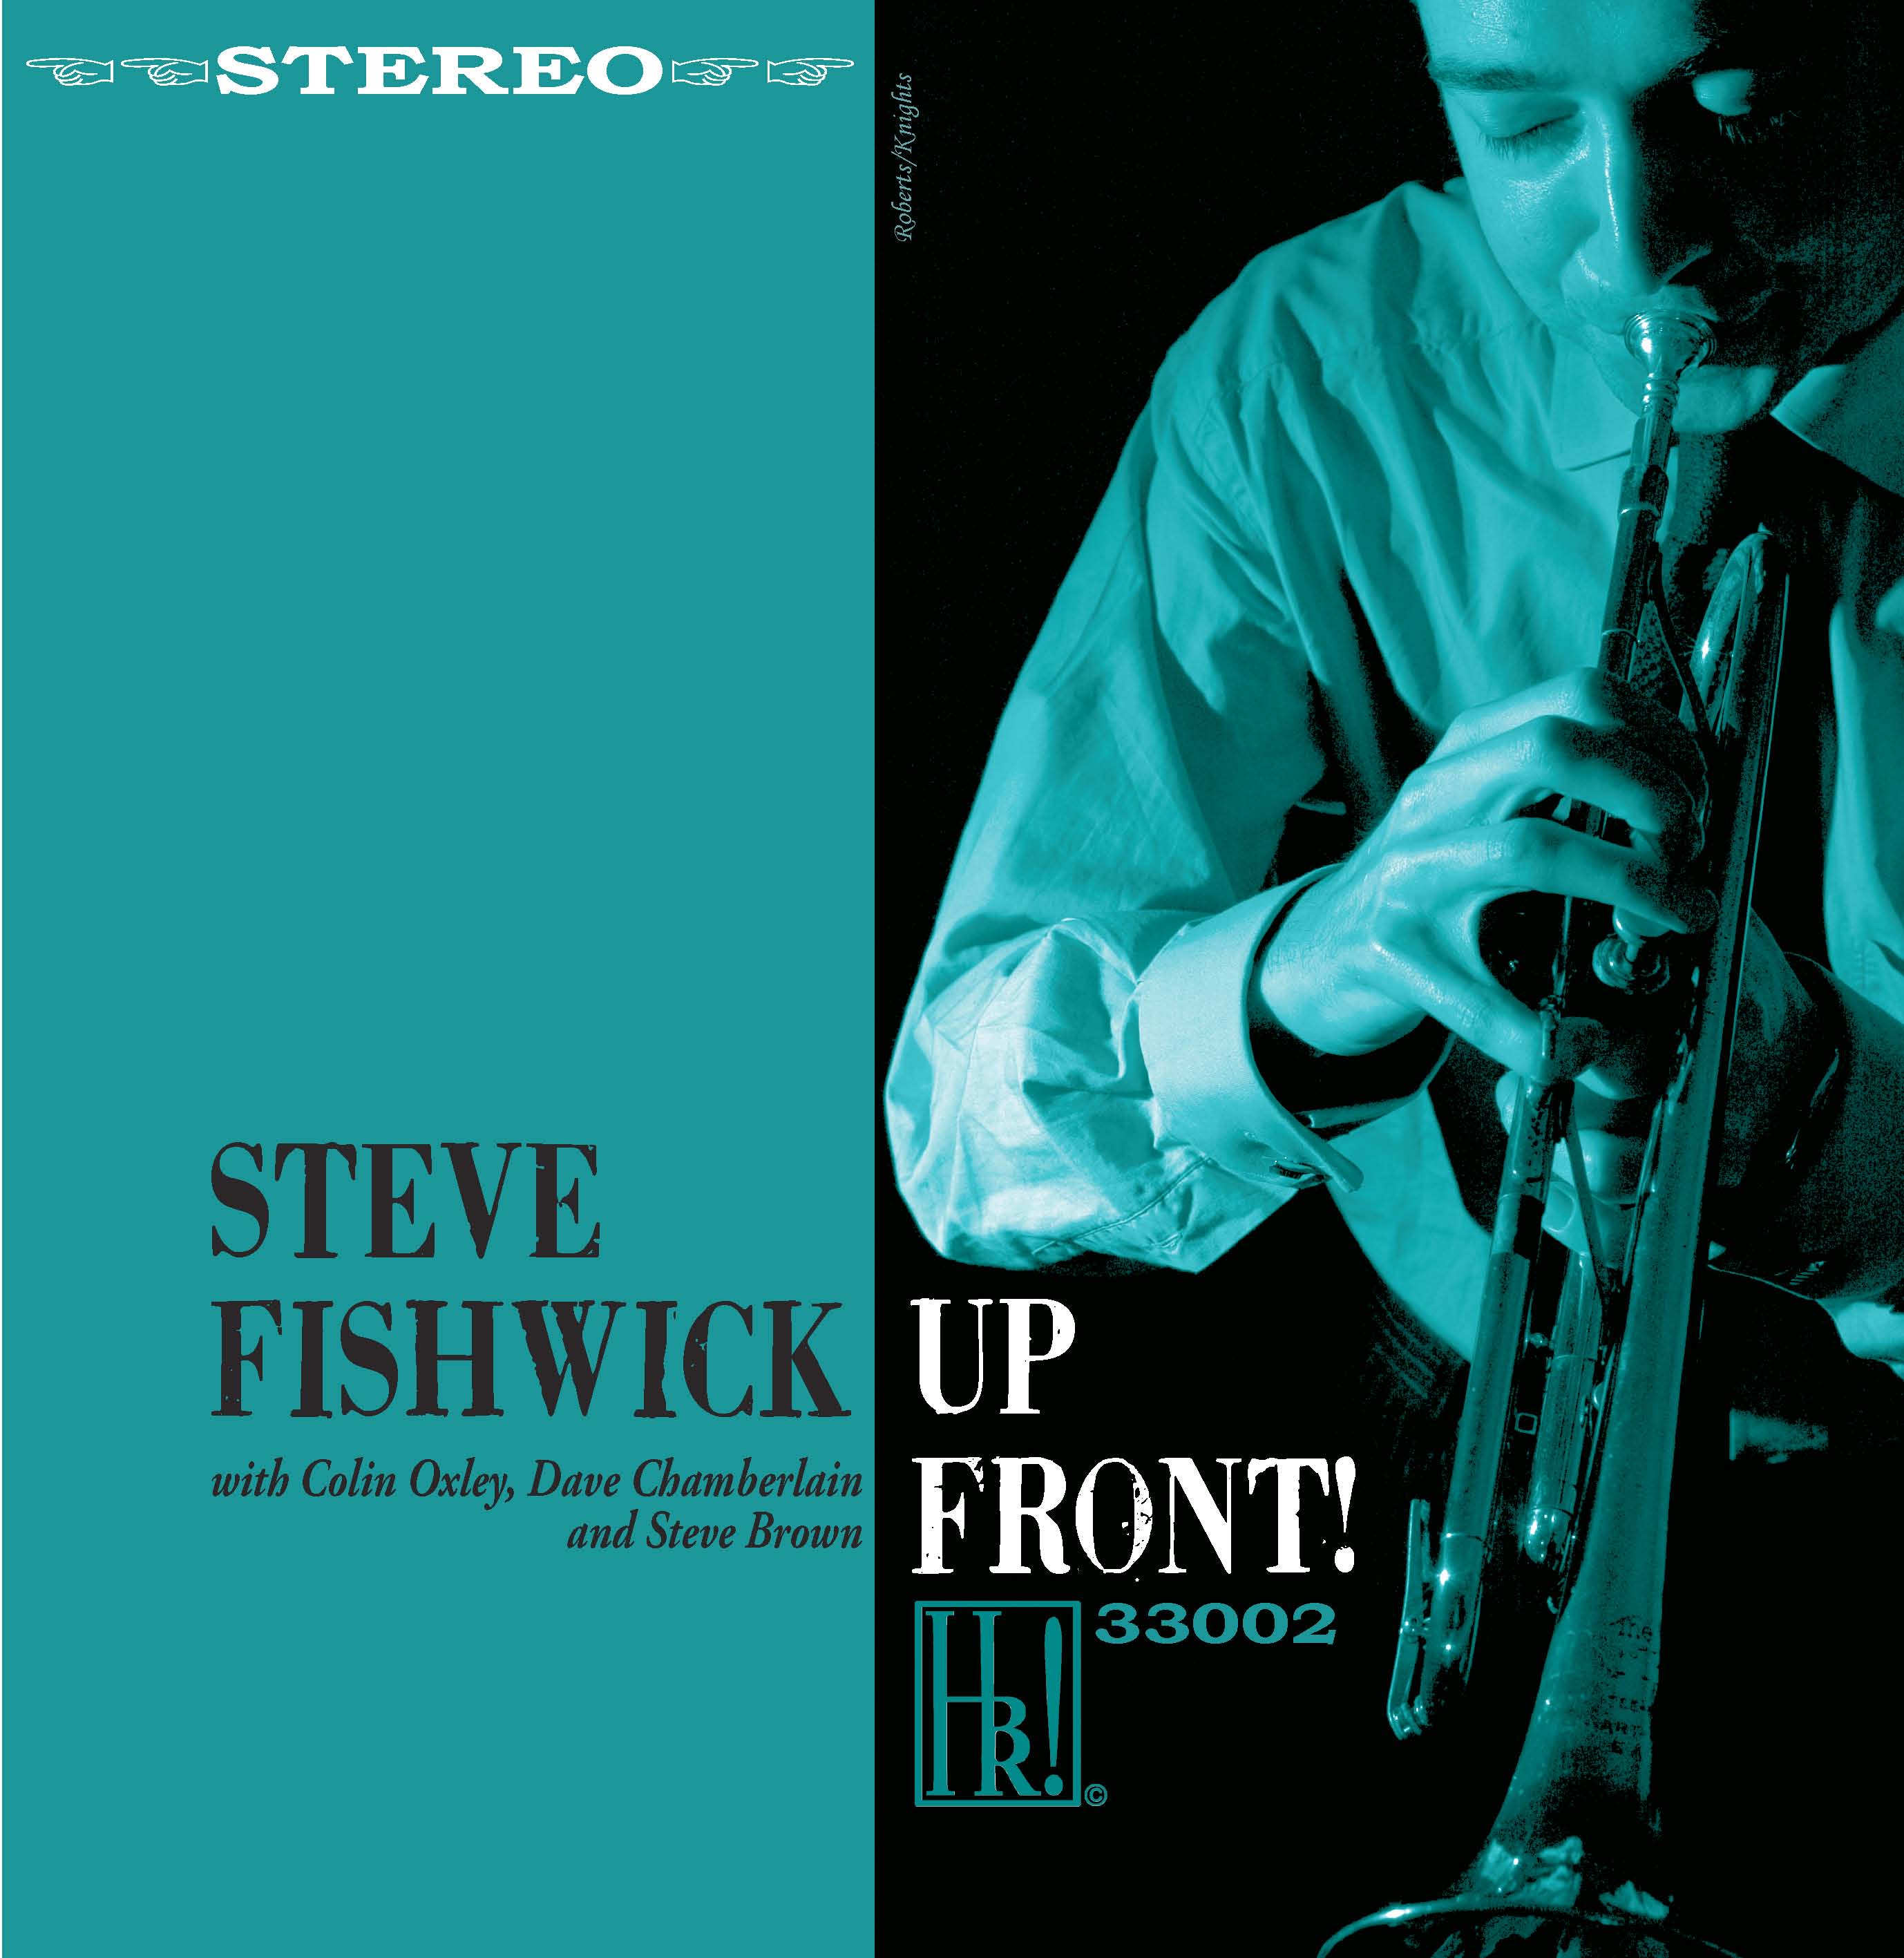 STEVE FISHWICK - Upfront! cover 